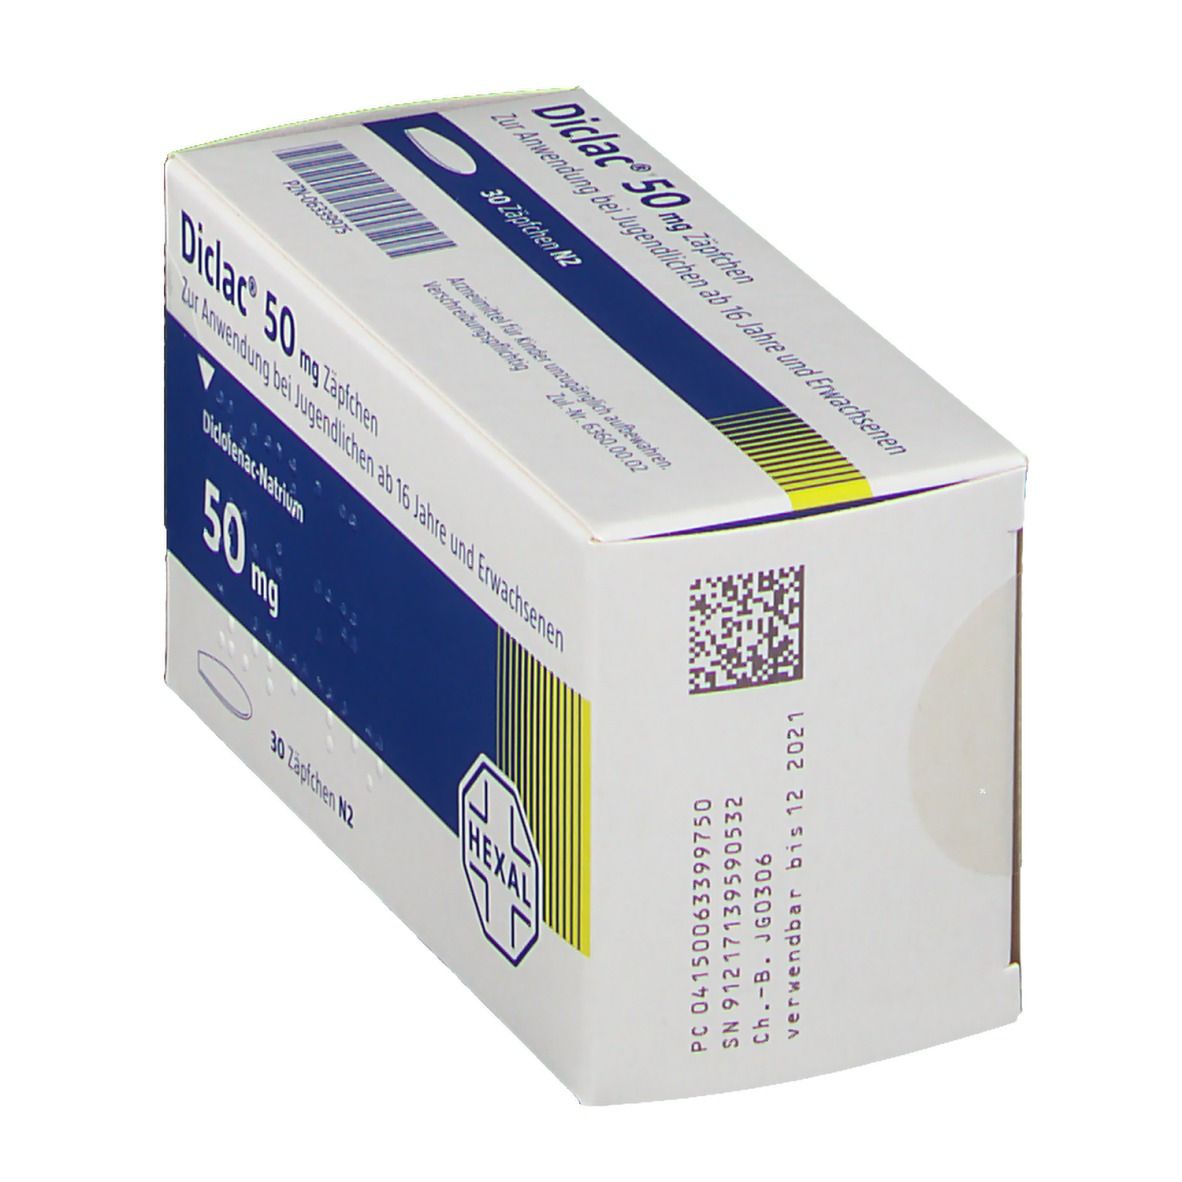 Diclac® 50 mg Zäpfchen